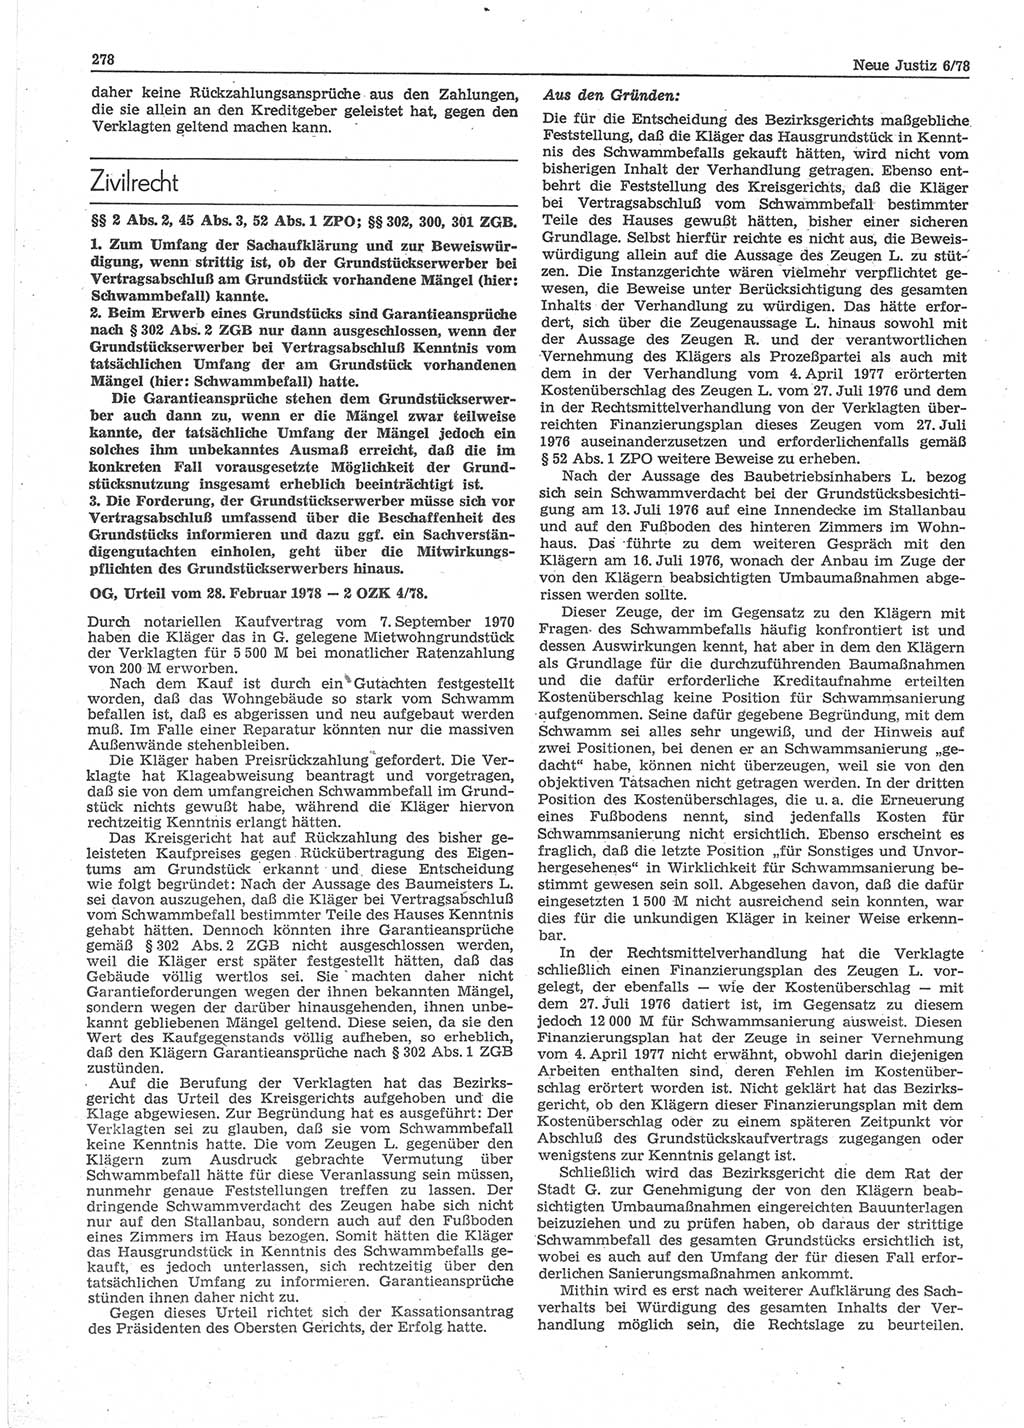 Neue Justiz (NJ), Zeitschrift für sozialistisches Recht und Gesetzlichkeit [Deutsche Demokratische Republik (DDR)], 32. Jahrgang 1978, Seite 278 (NJ DDR 1978, S. 278)